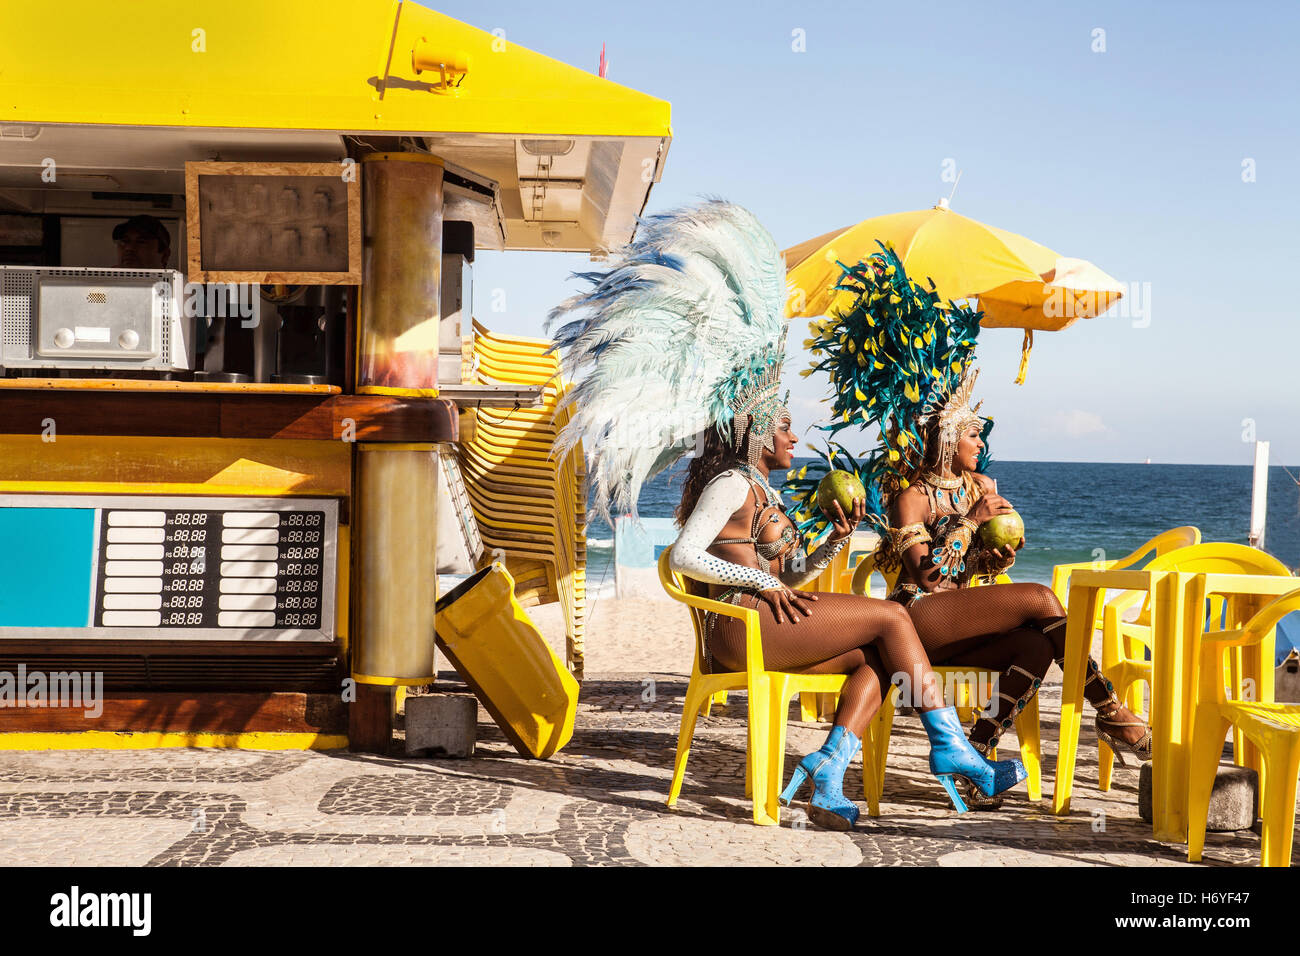 I ballerini di Samba prendendo una pausa, la spiaggia di Ipanema, Rio de Janeiro, Brasile immagine scaricata da a 12:37 su 13/06/15 Foto Stock